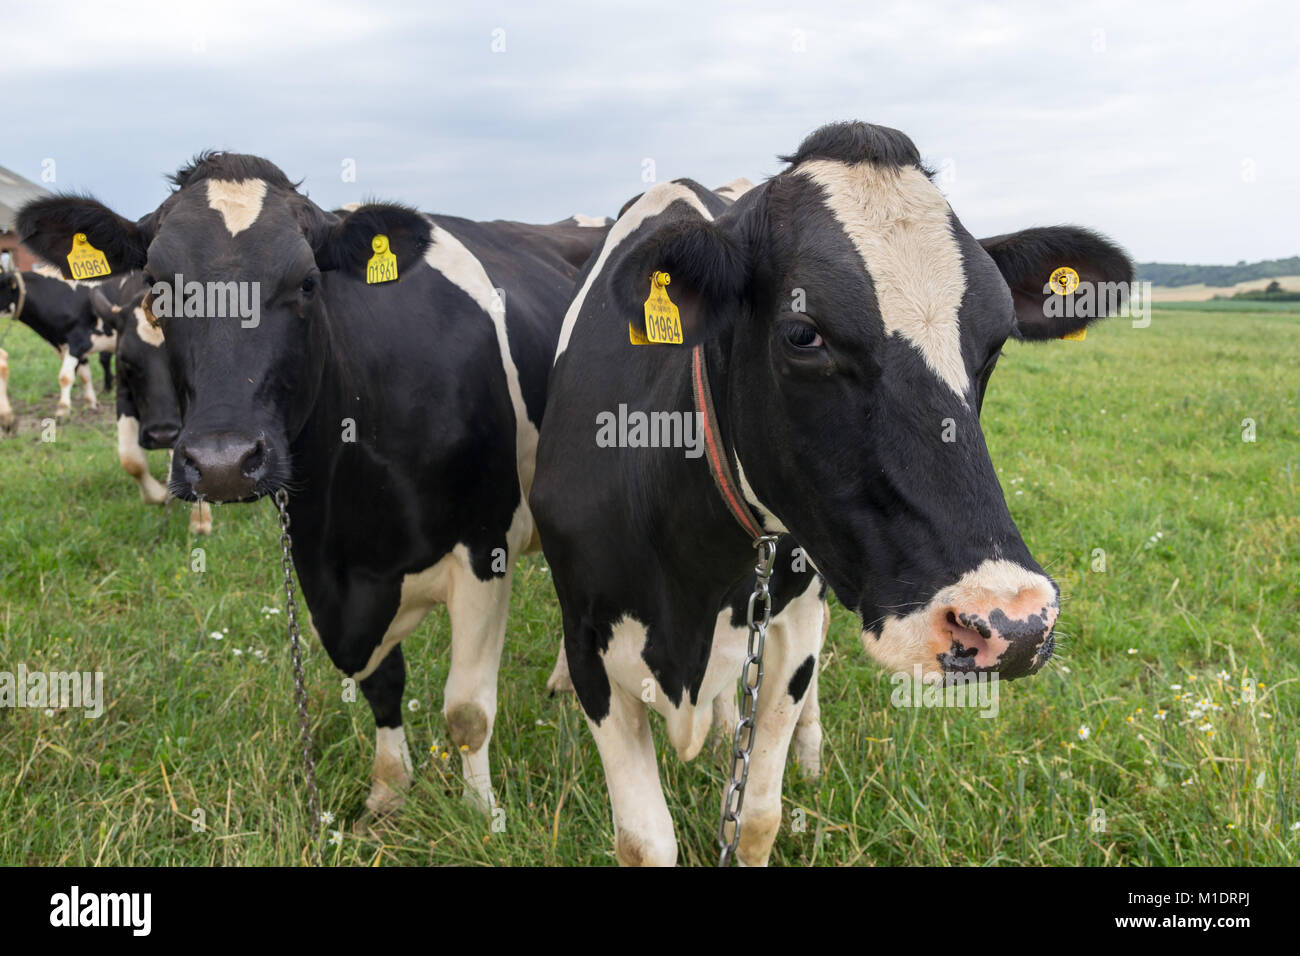 Danish black and white cattle on grass; Fur, Denmark Stock Photo